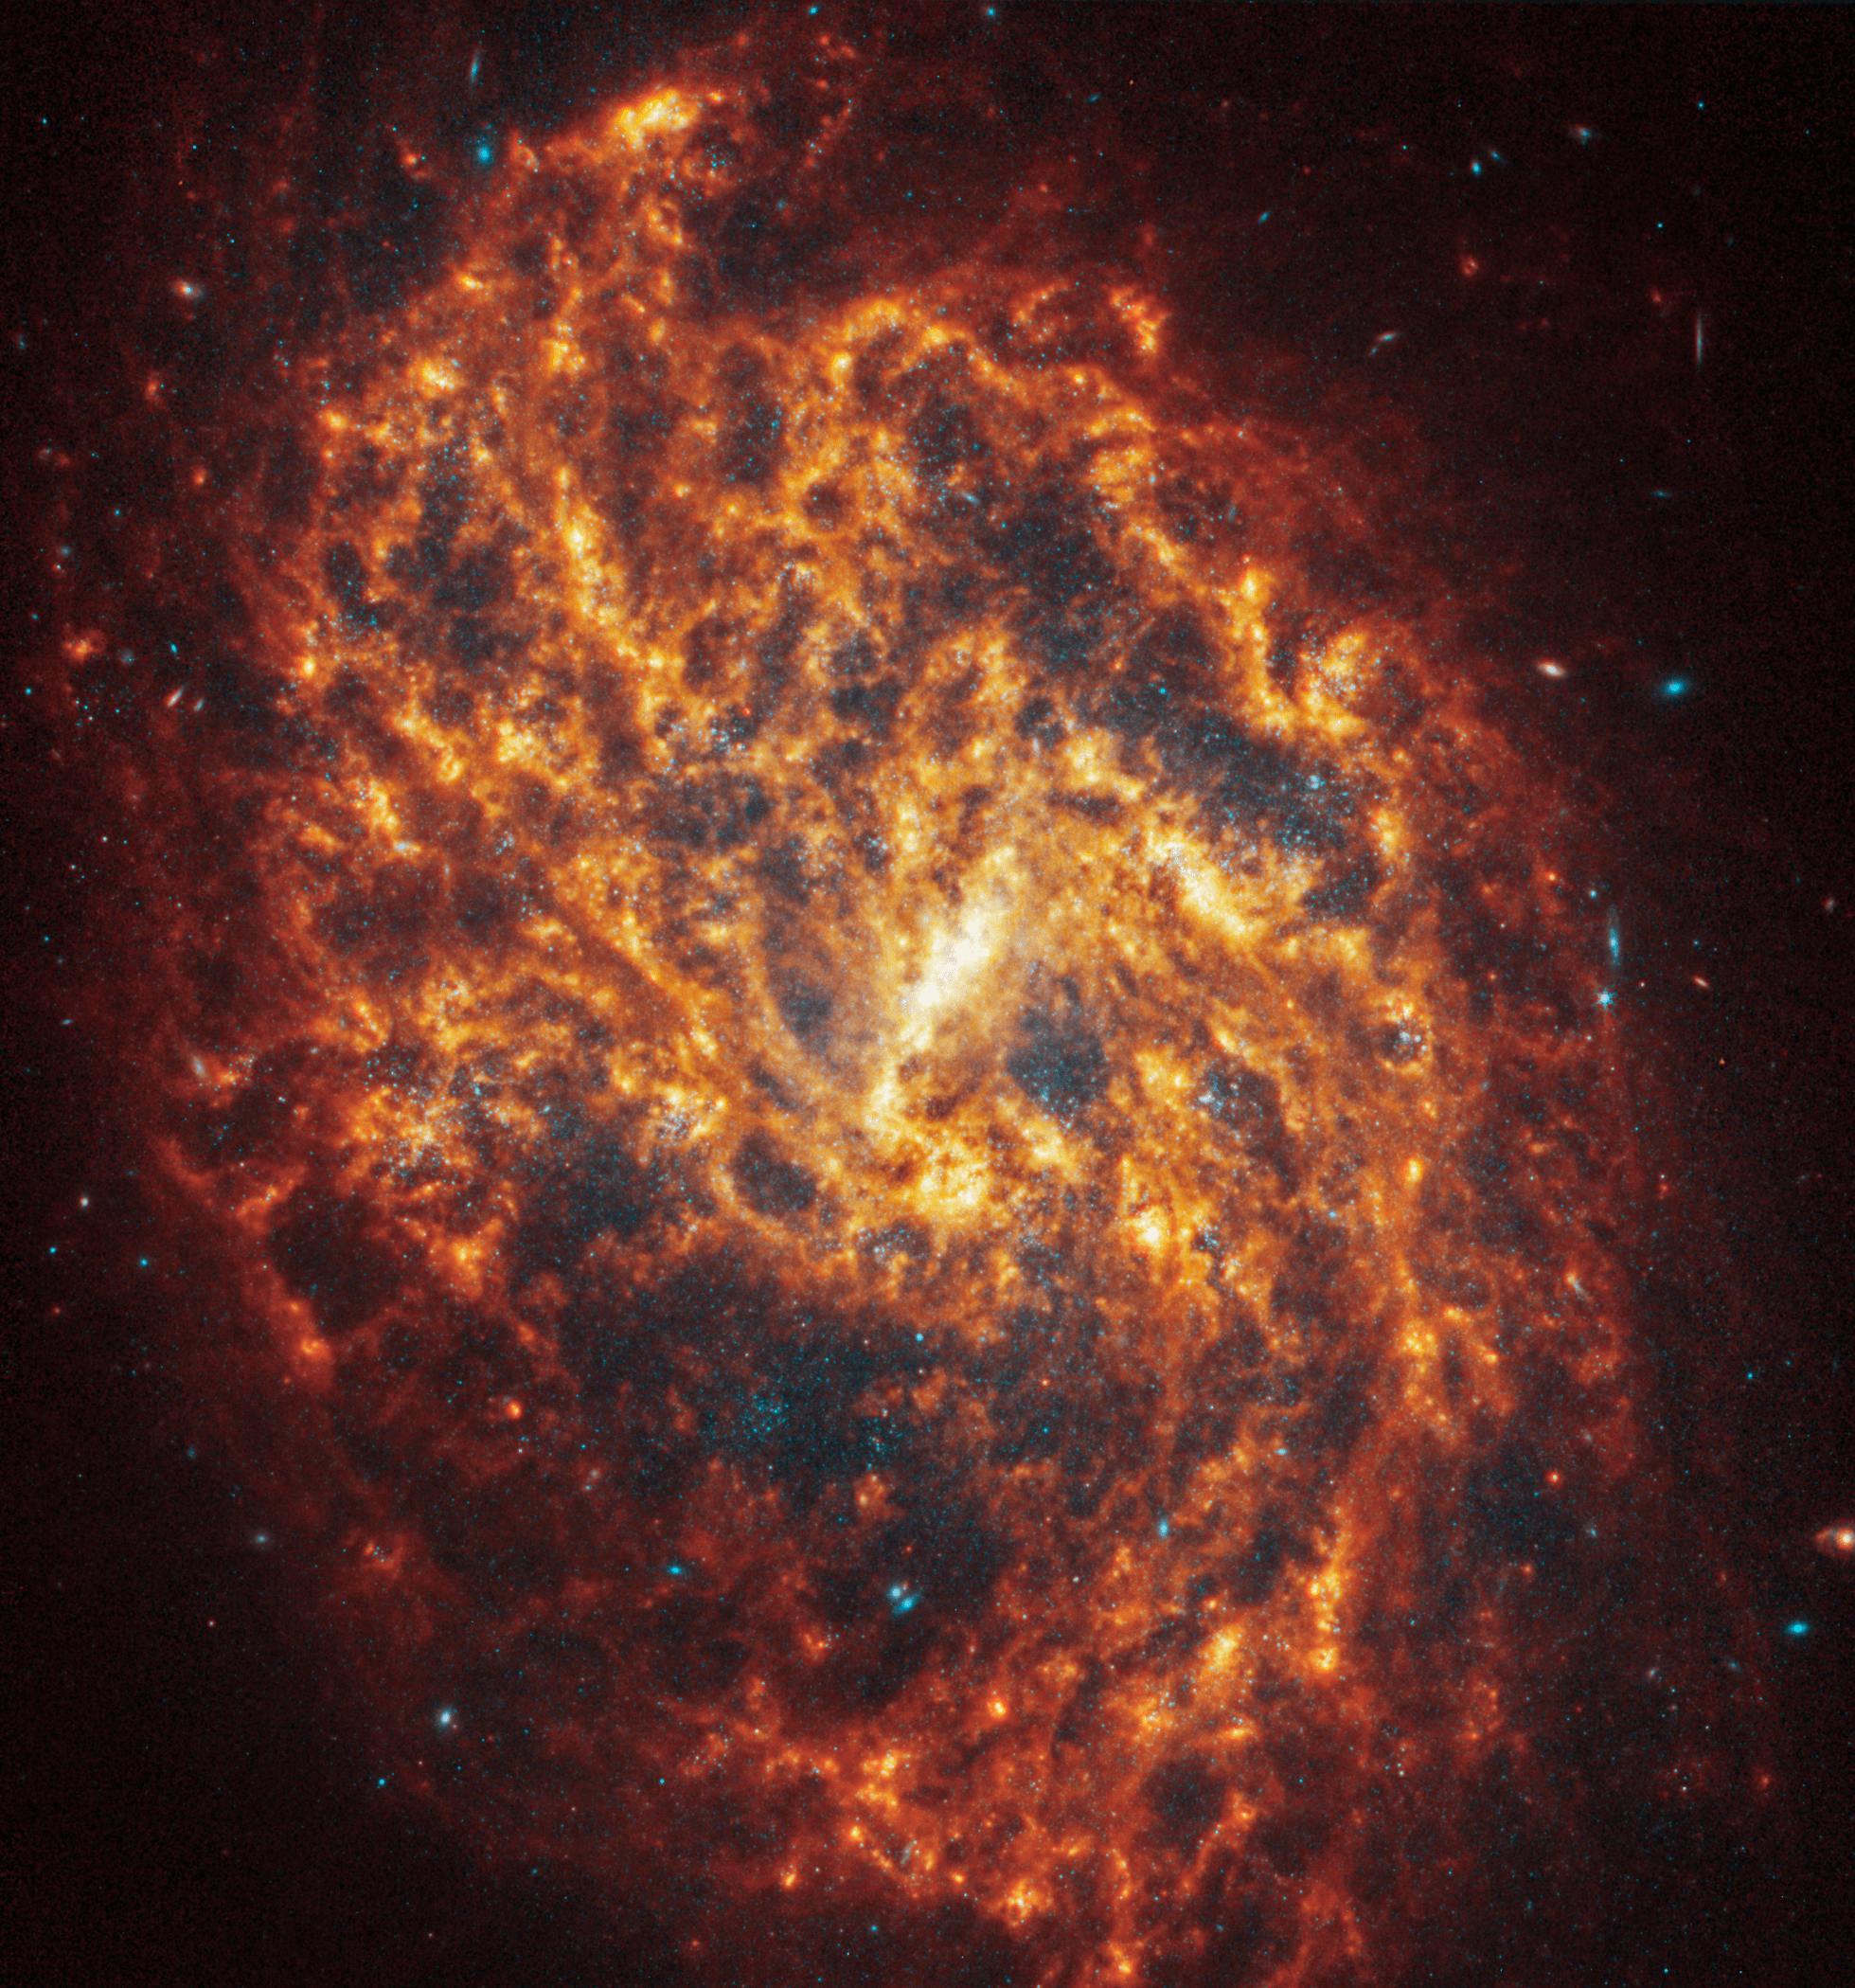 Imagen de la galaxia espiral NGC 1087, ubicada a 80 millones de años luz en la constelación de Cetus (La Ballena), capturando su impresionante estructura y la belleza de sus brazos espirales extendiéndose en el espacio.
